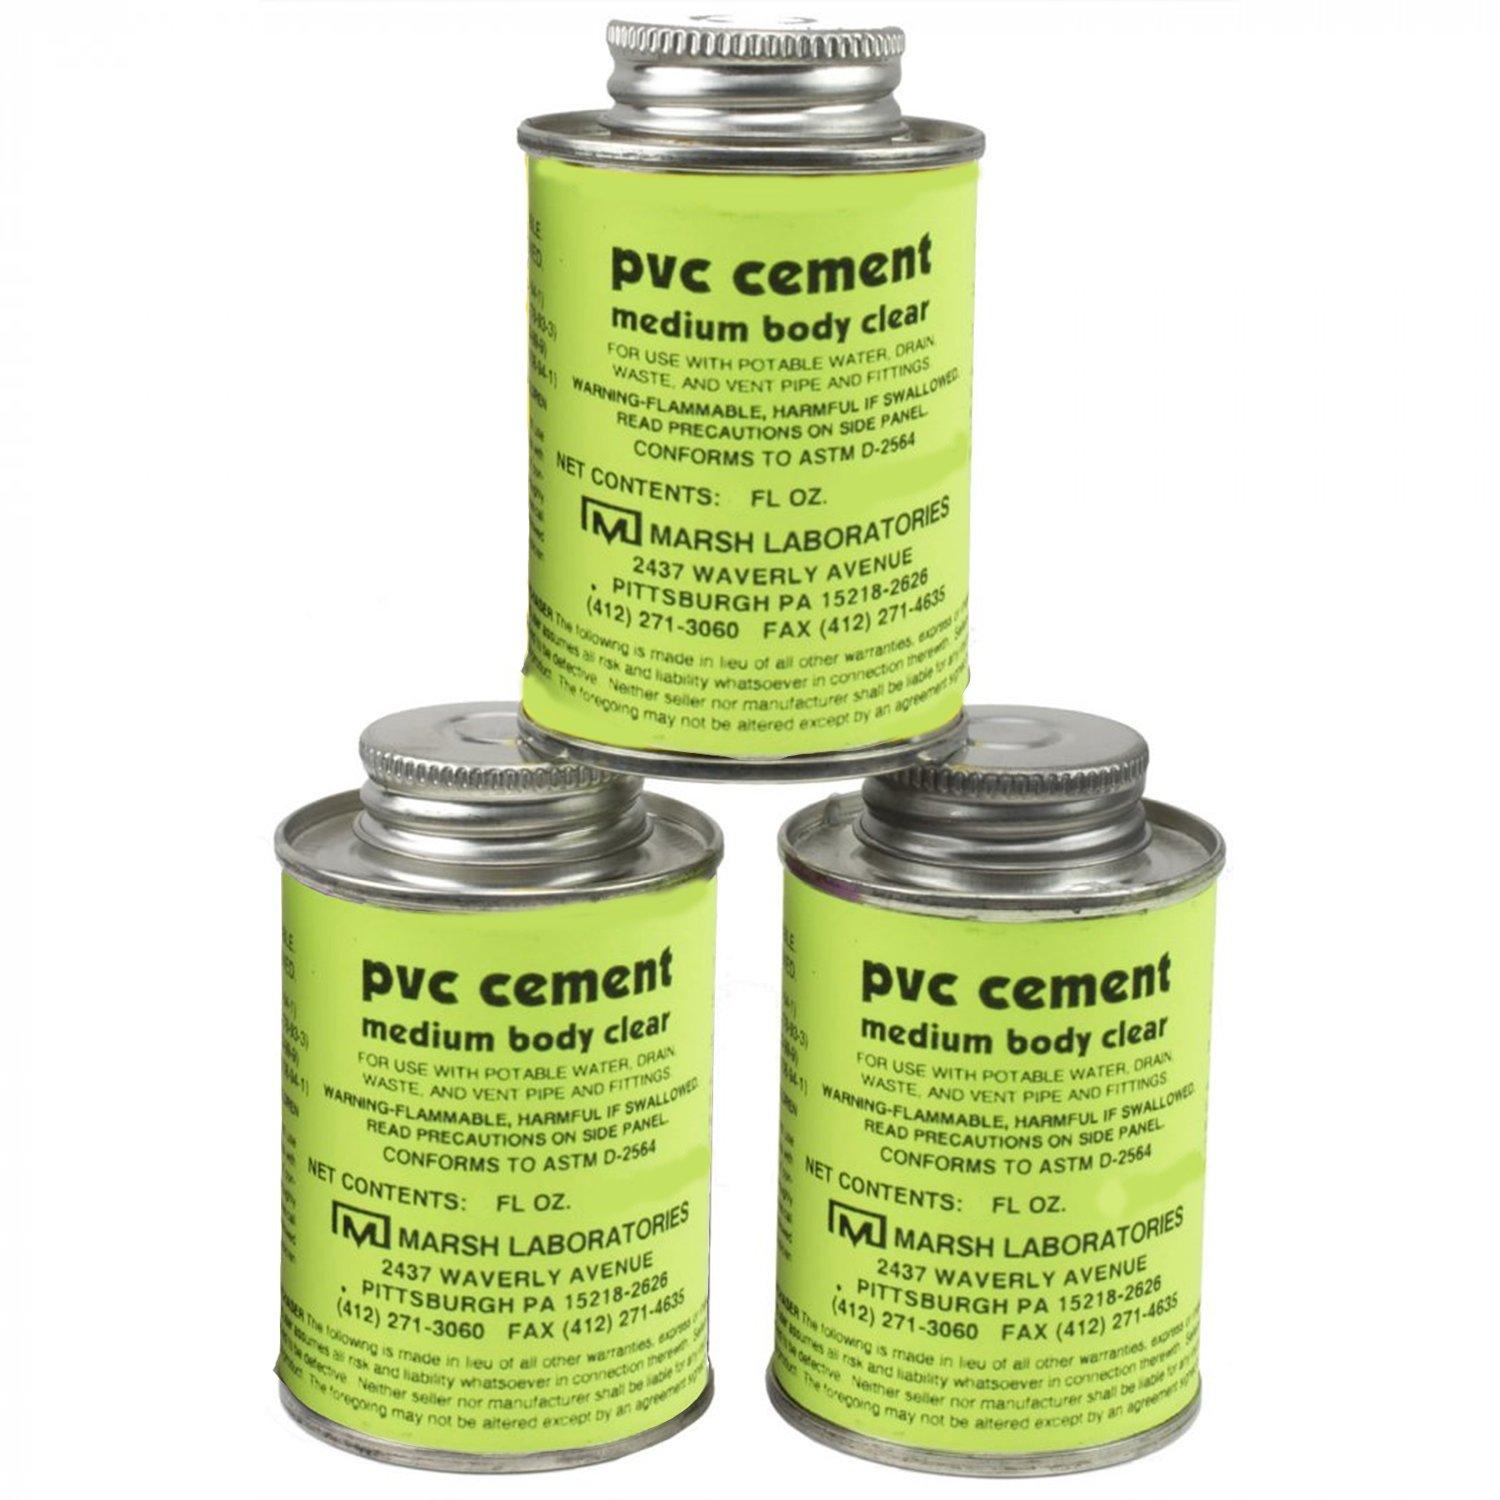 PVC cement
